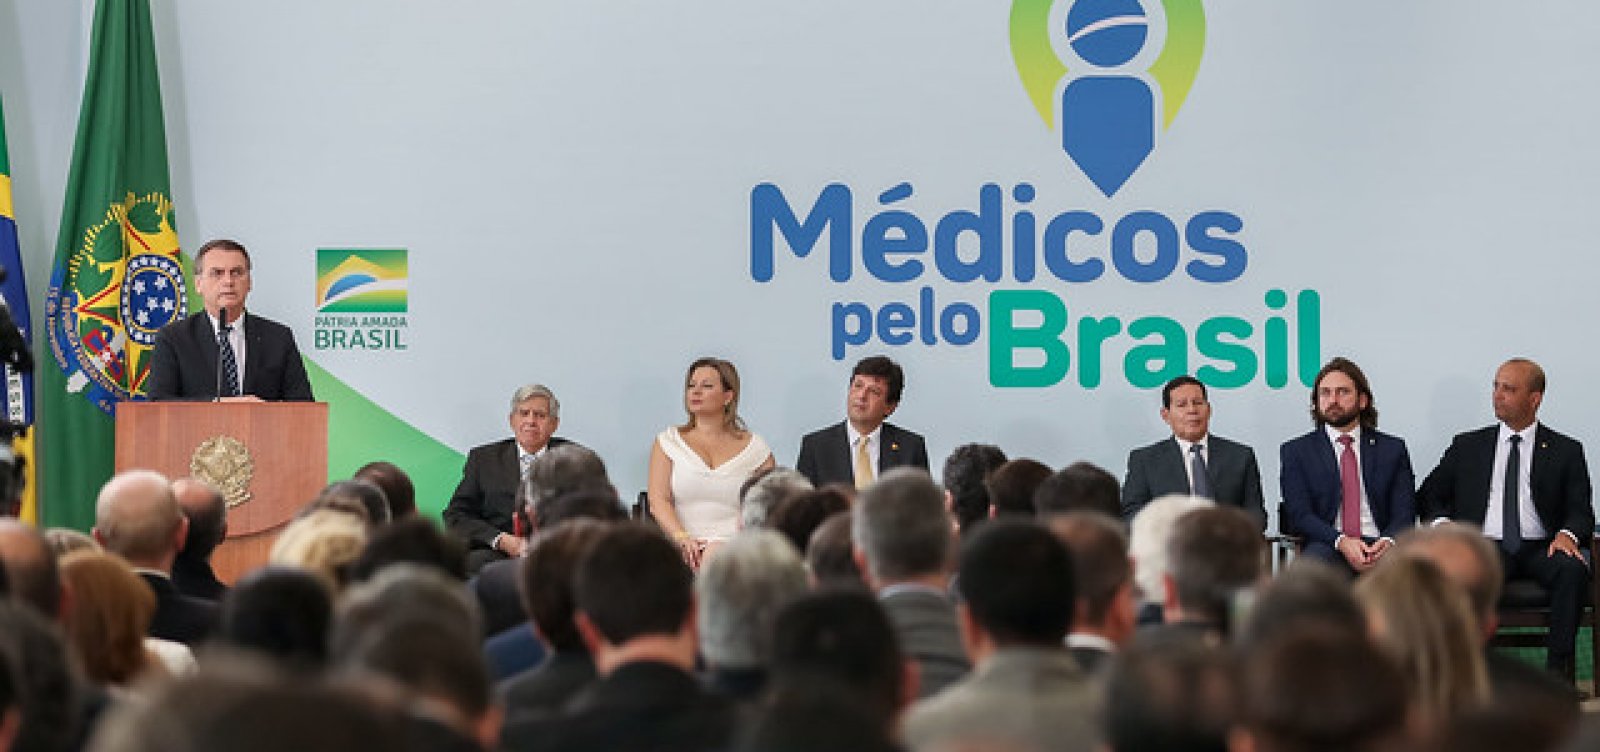 Municípios podem aderir ao Programa Médicos pelo Brasil até 21 de dezembro